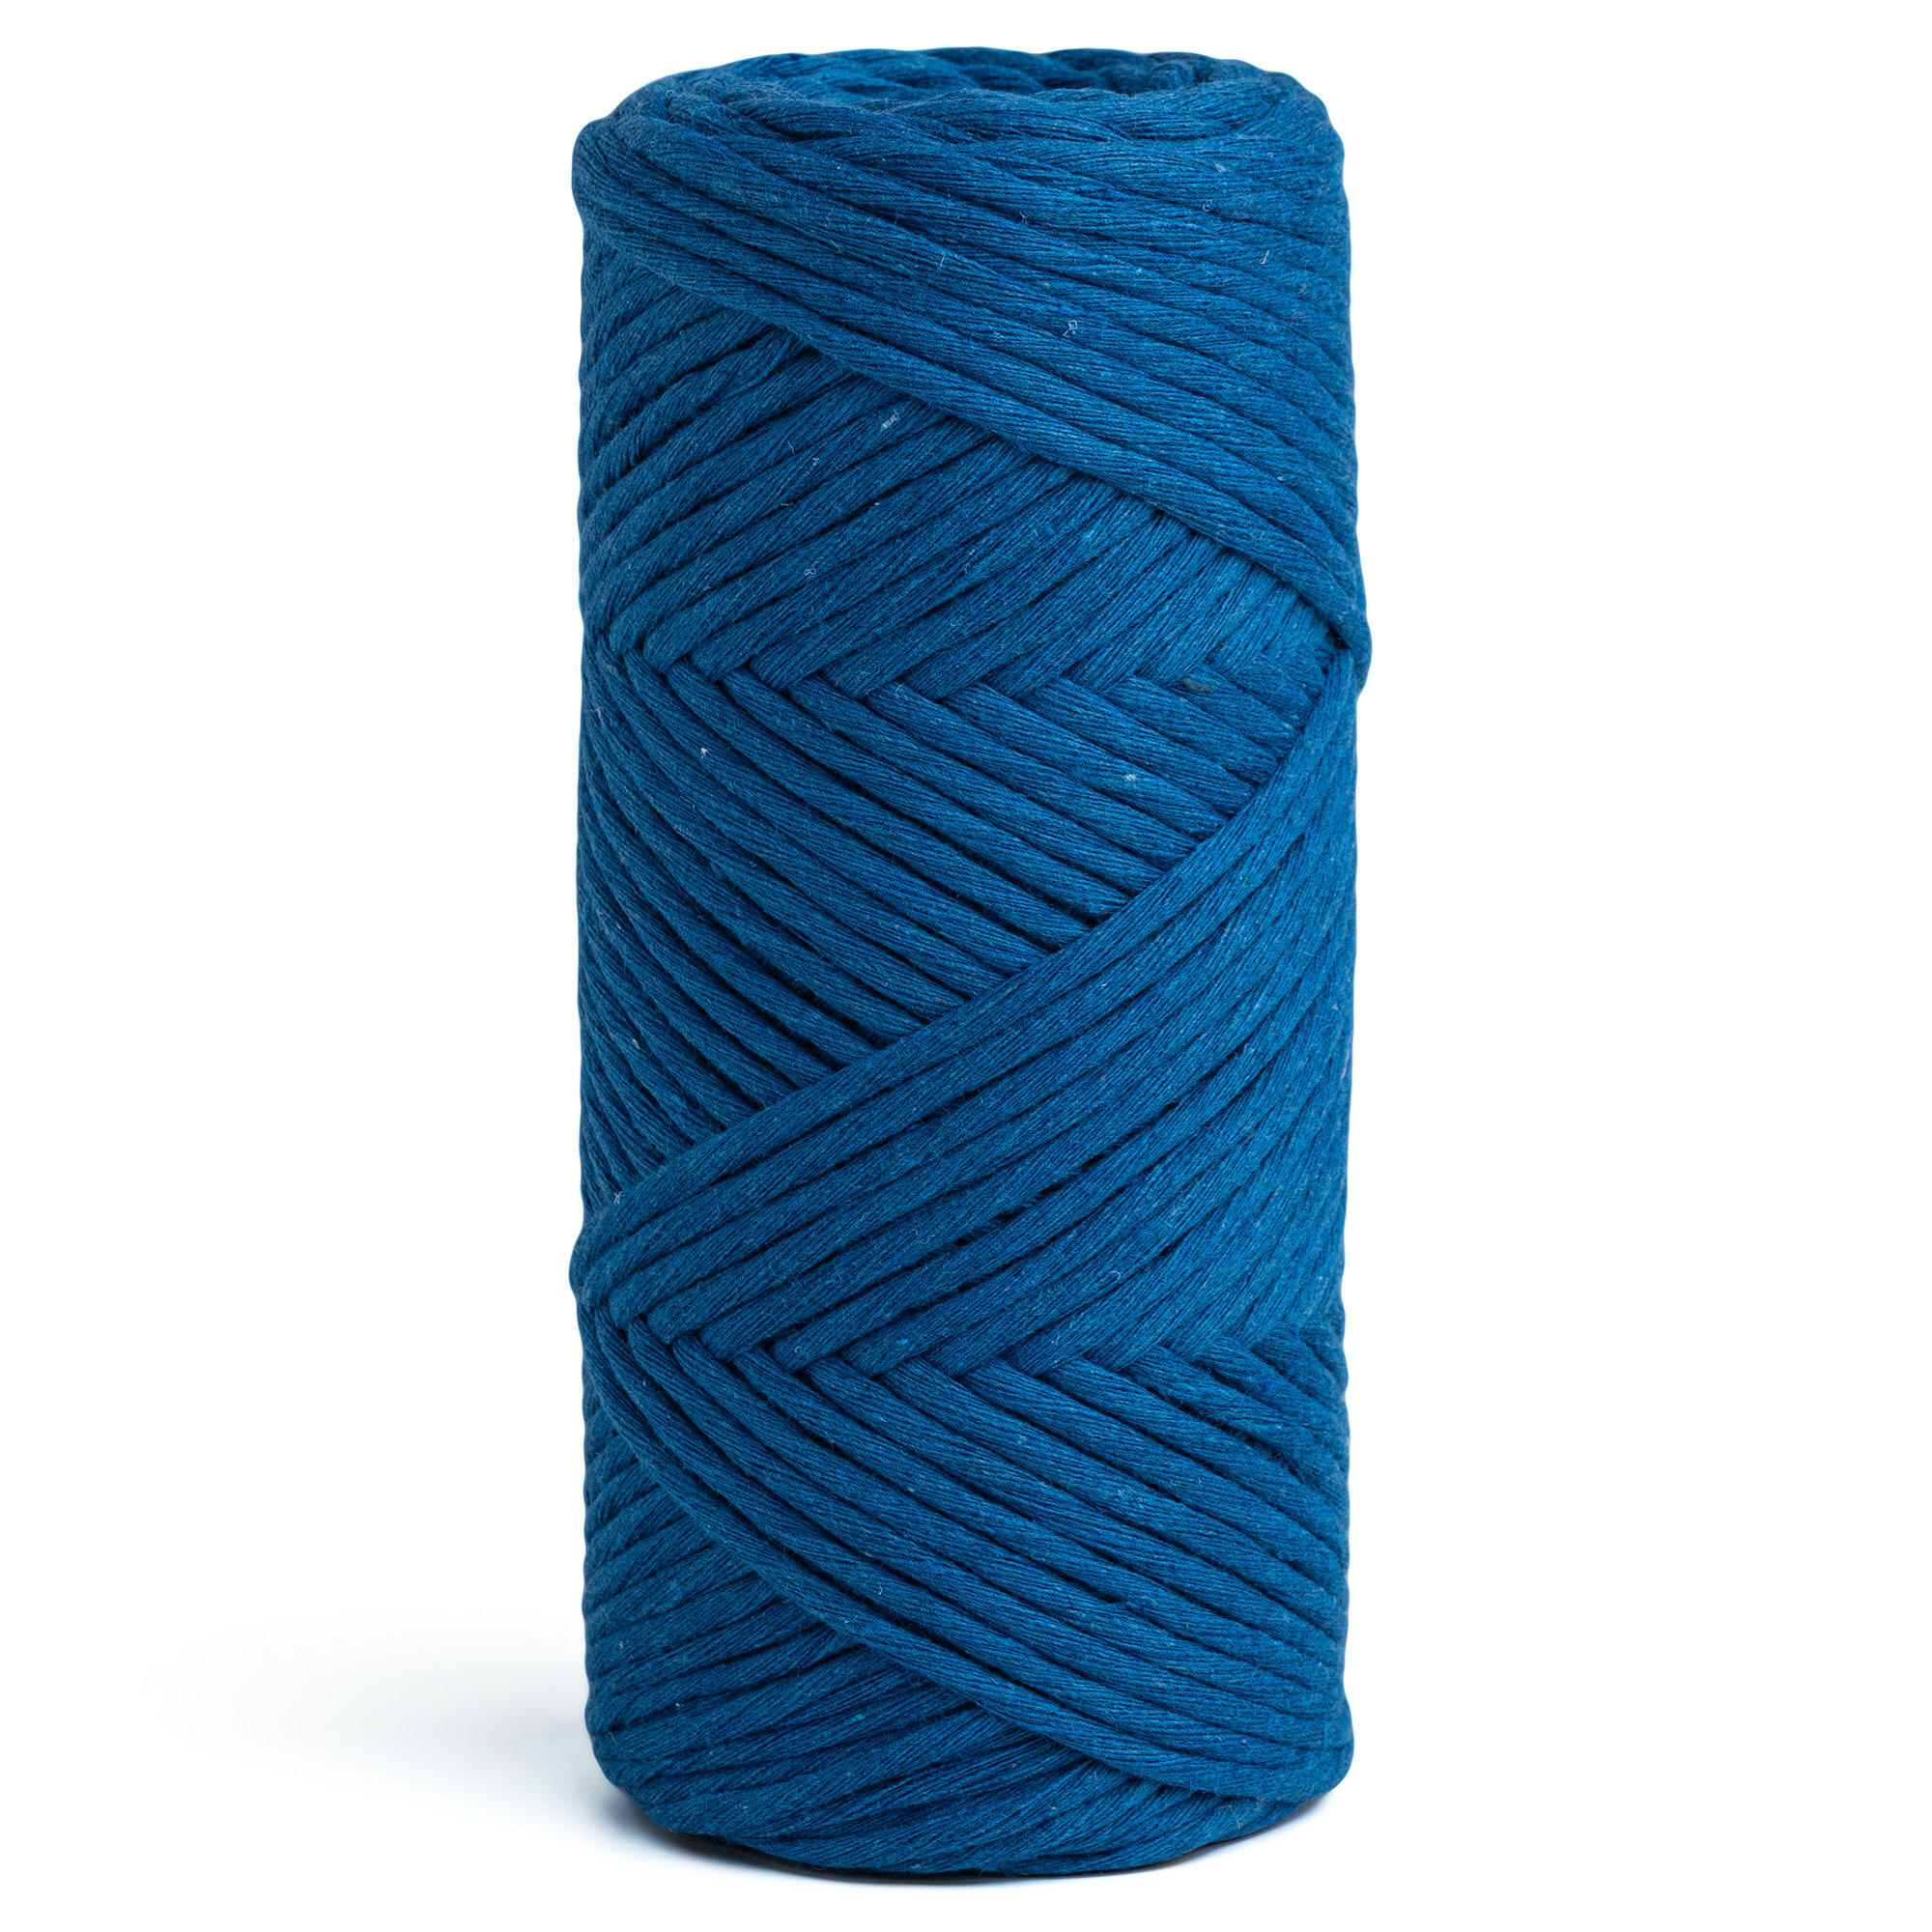 Шпагат хлопковый синий 3 мм 100 м для макраме, вязания, рукоделия